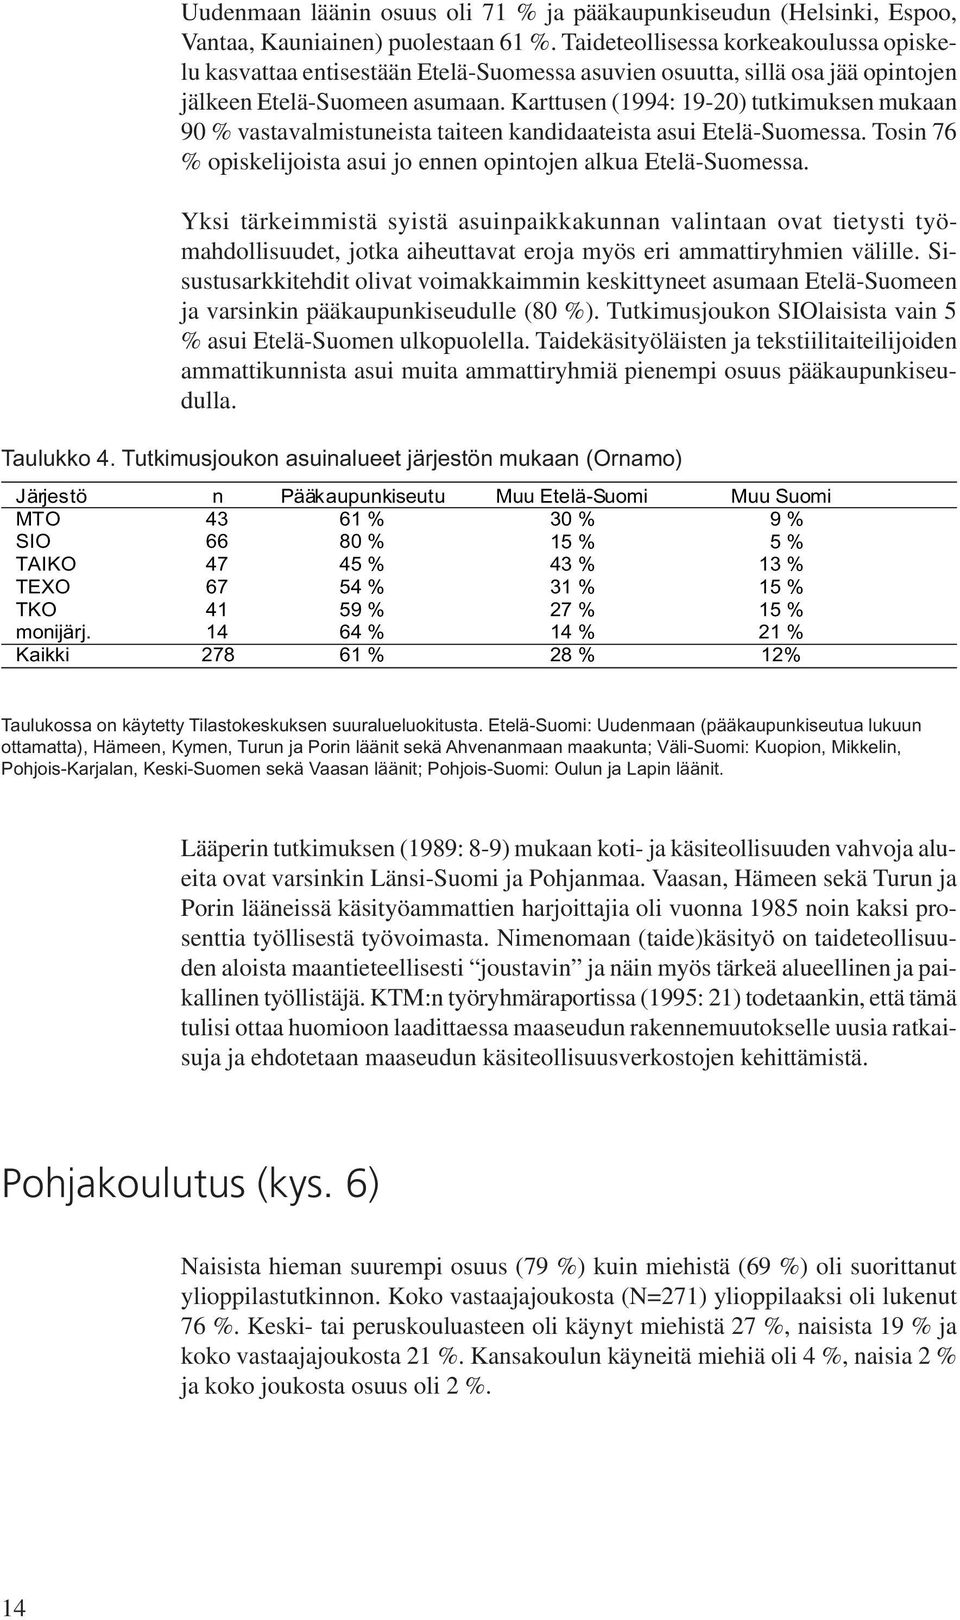 Karttusen (1994: 19-20) tutkimuksen mukaan 90 % vastavalmistuneista taiteen kandidaateista asui Etelä-Suomessa. Tosin 76 % opiskelijoista asui jo ennen opintojen alkua Etelä-Suomessa.